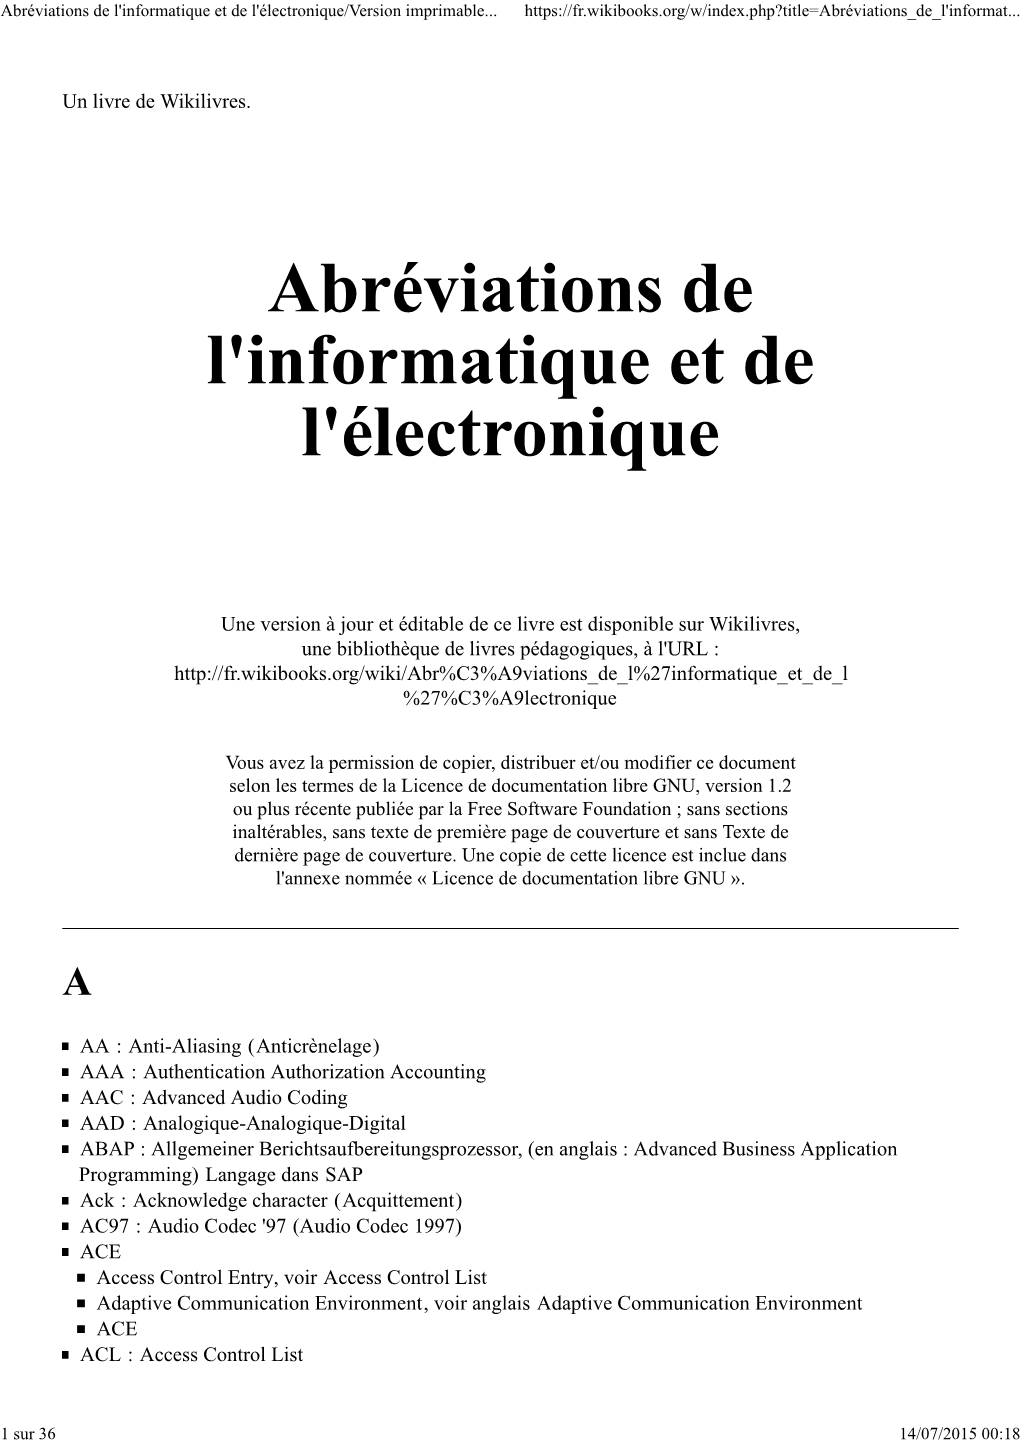 Abréviations De L'informatique Et De L'électronique/Version Imprimable